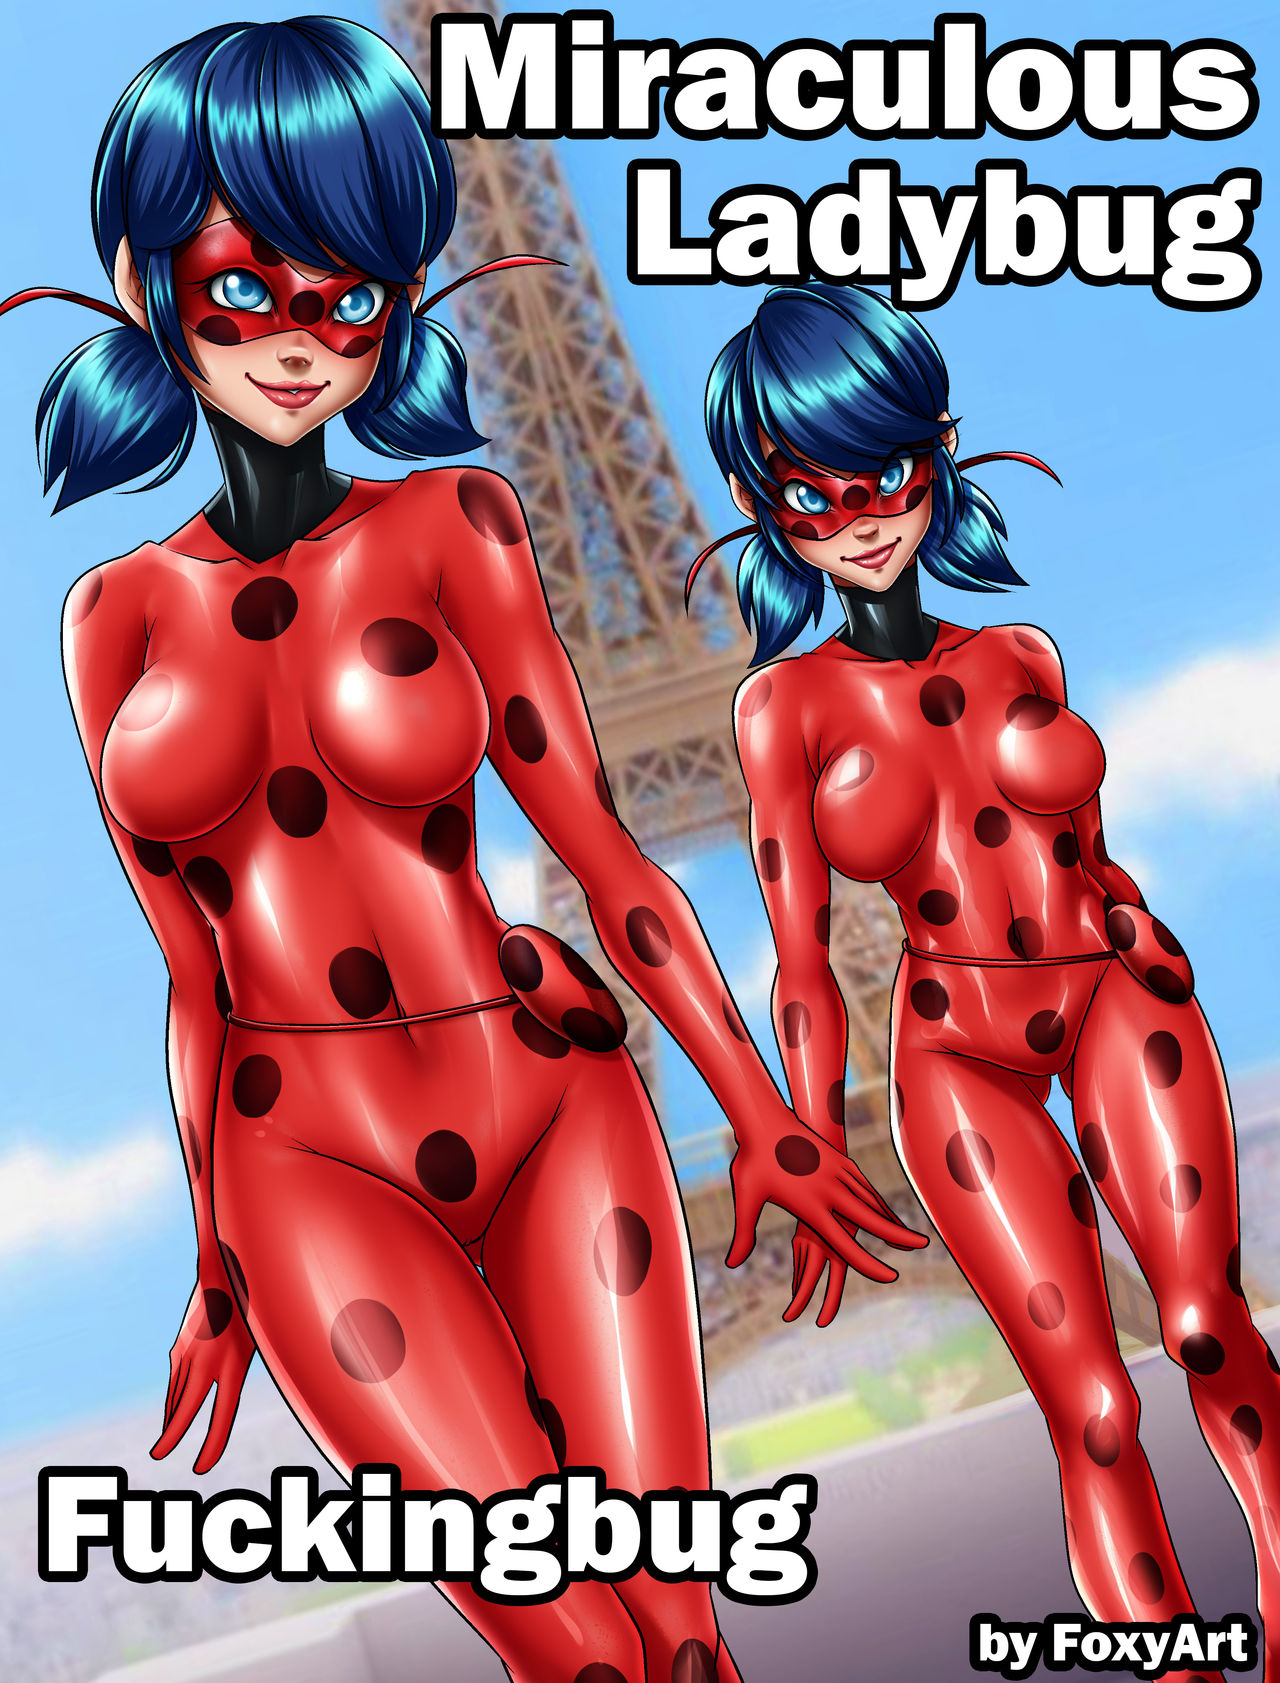 Fuckingbug – Cómic Miraculous Ladybug [Foxyart]